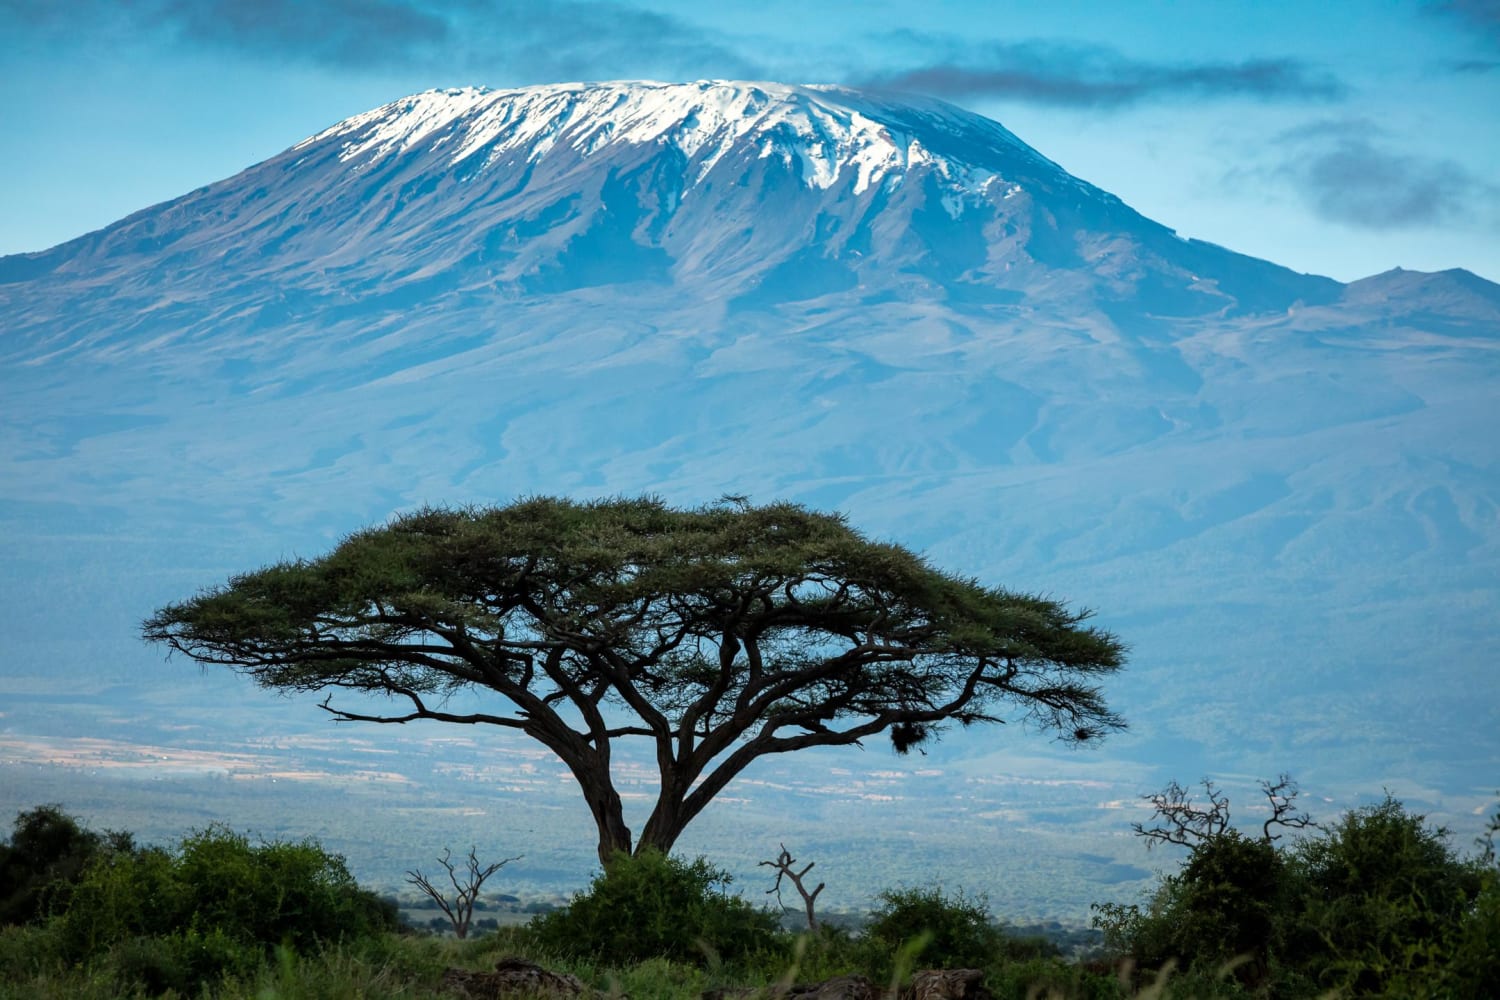 Mount Kilimanjaro shot from Amboseli National Park in Kenya